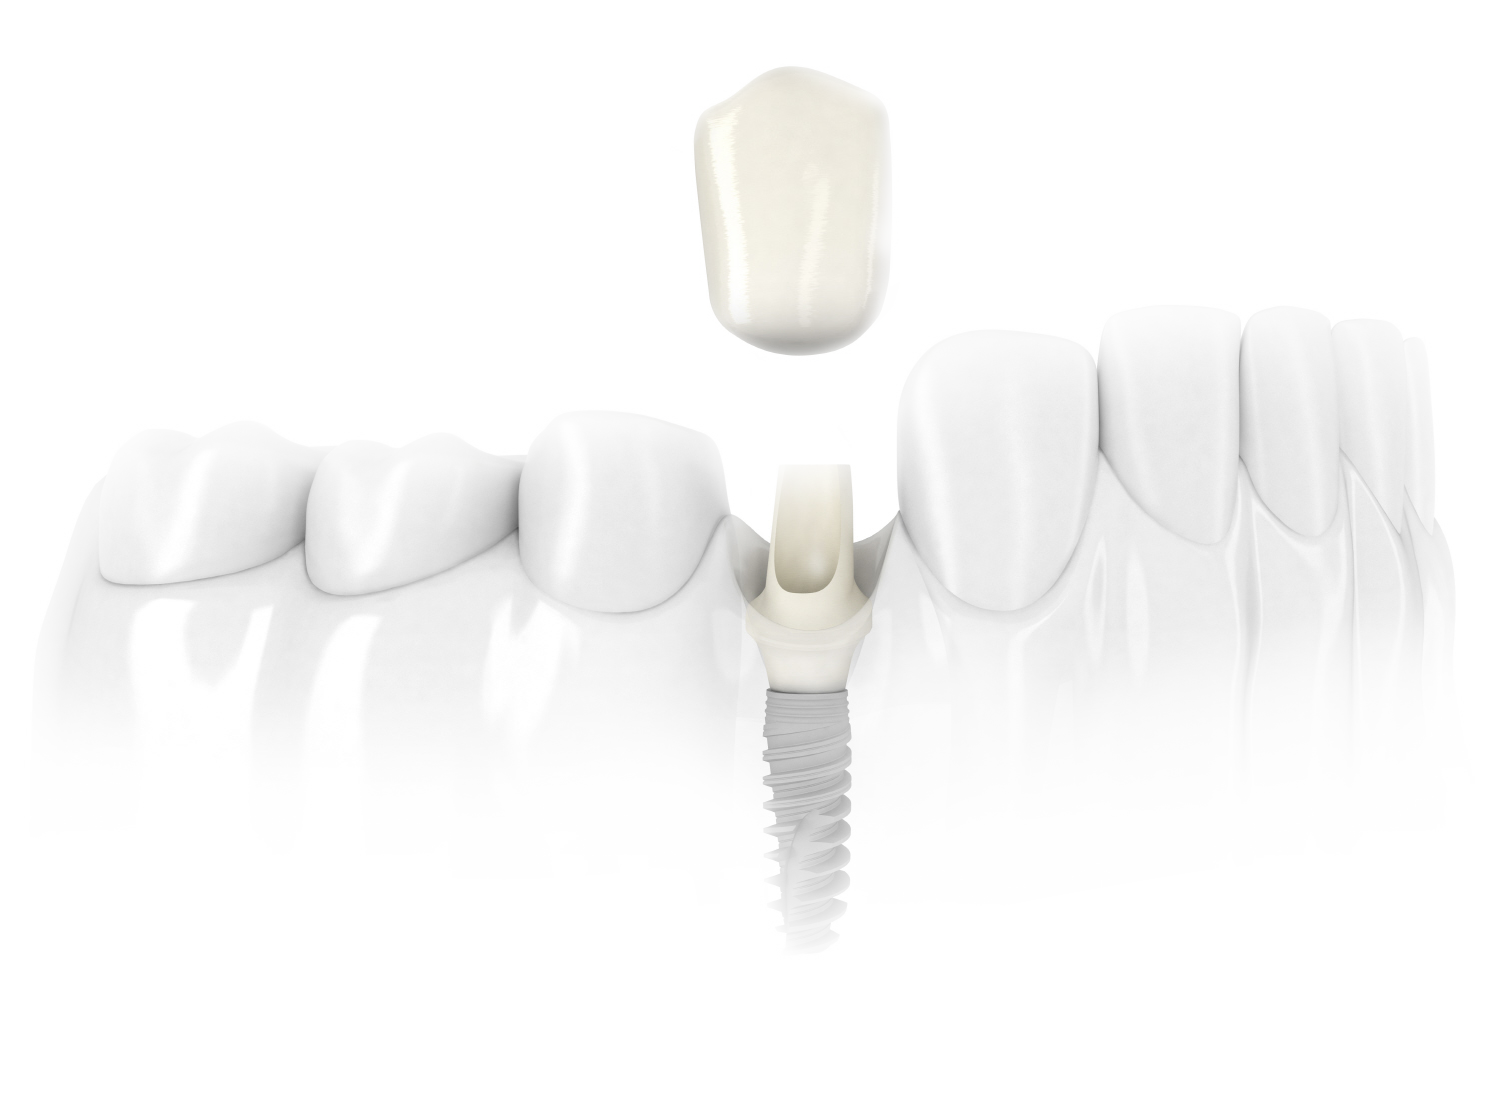 implante3 - Implantes Dentários